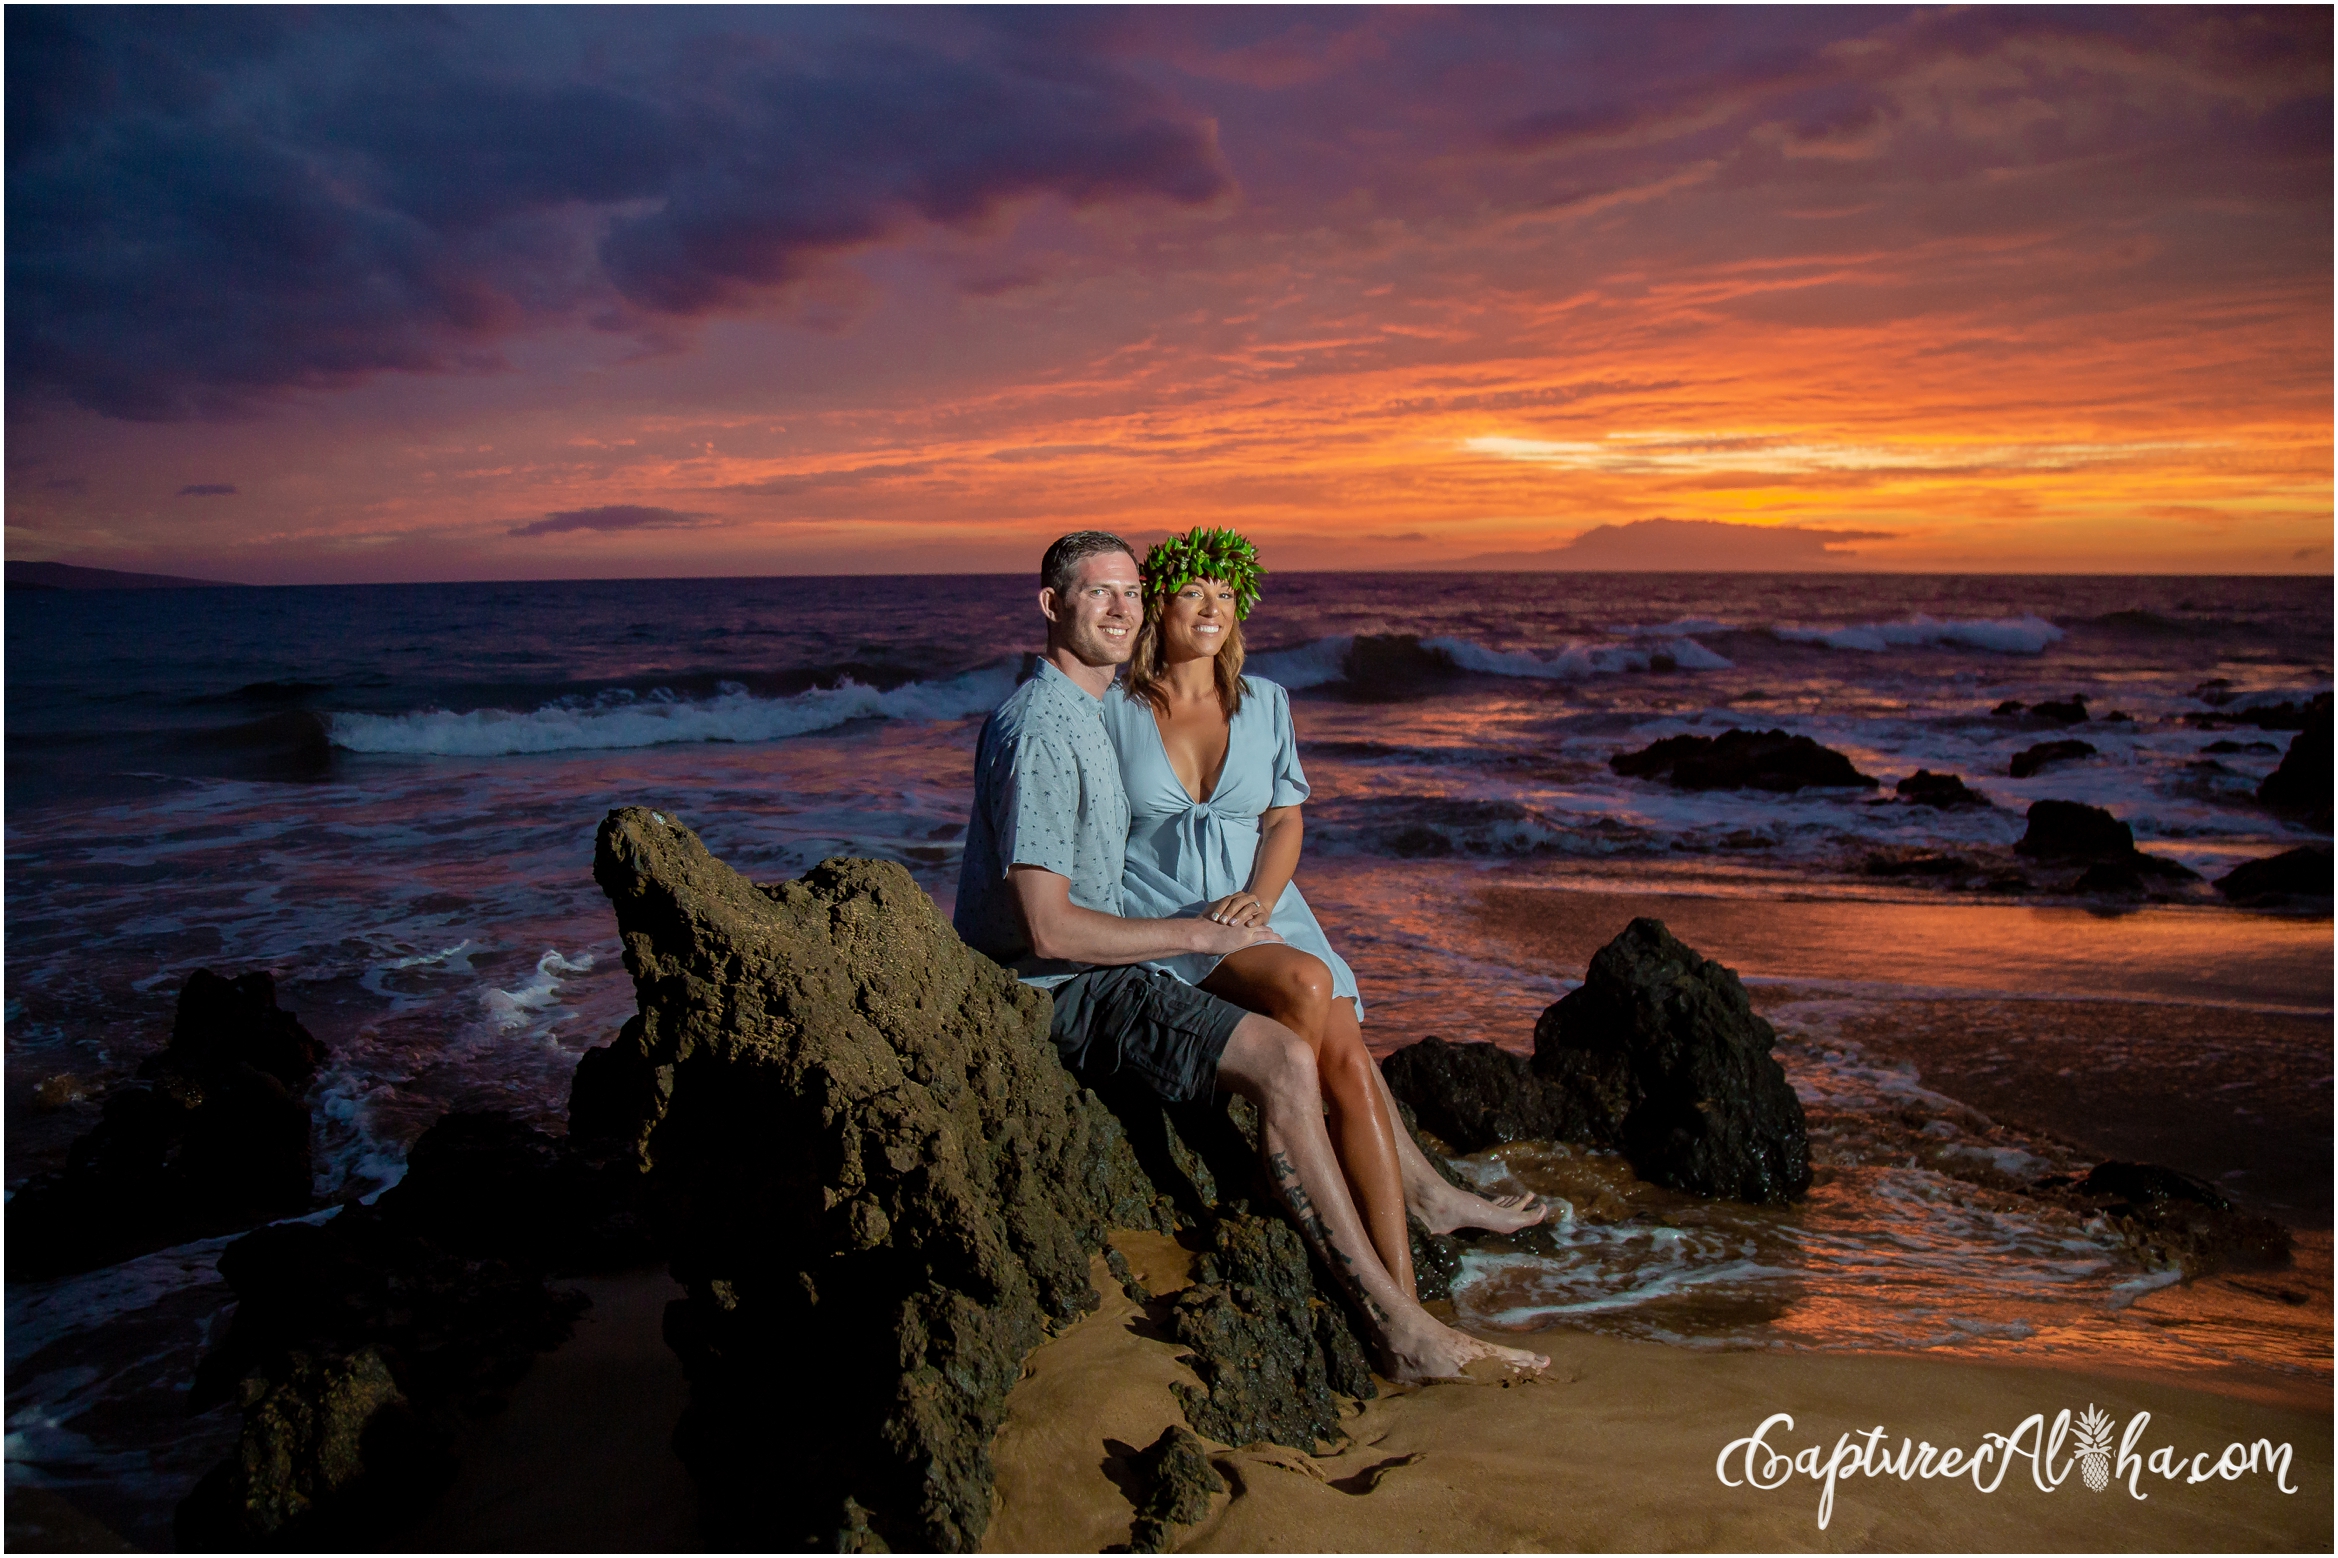 Maui Family Photography at Po'olenalena Beach Park at Sunset